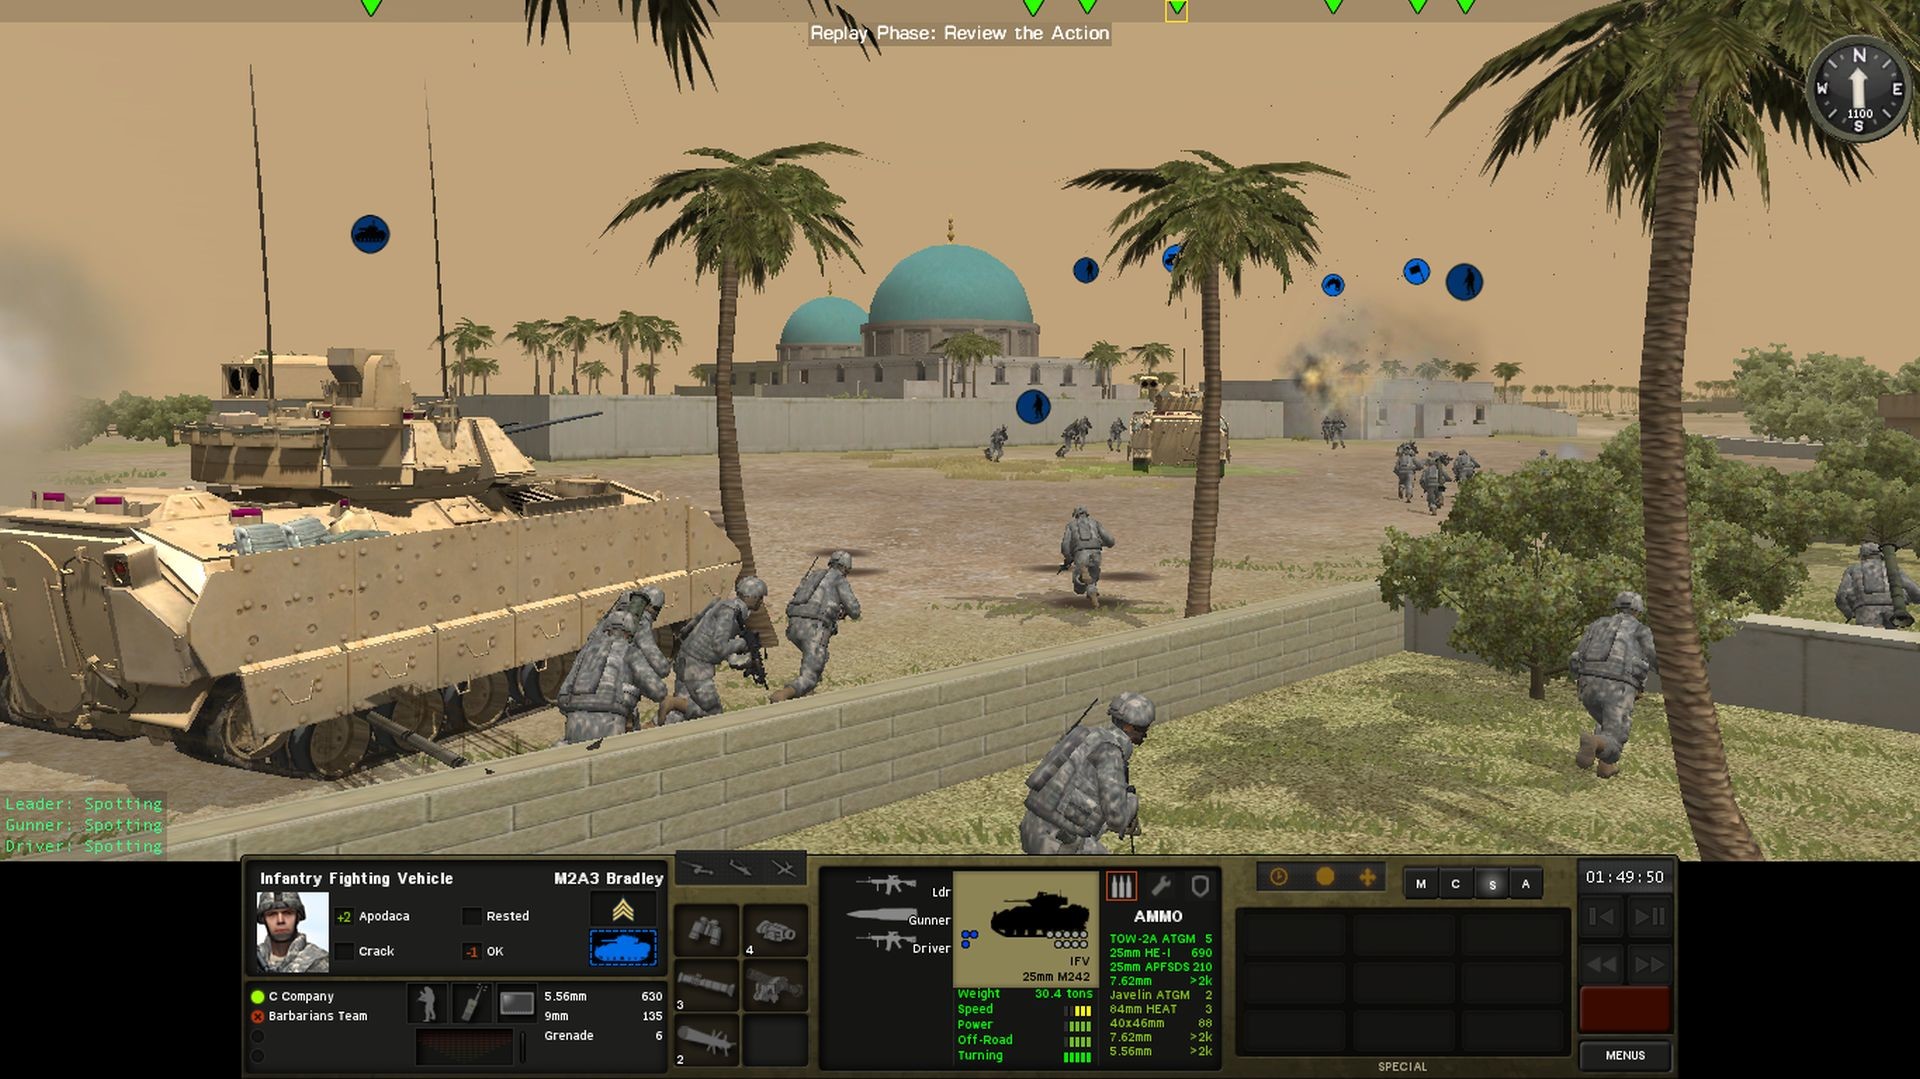 ArmA 3 Gameplay - Havoc 2 Platoon Mission 